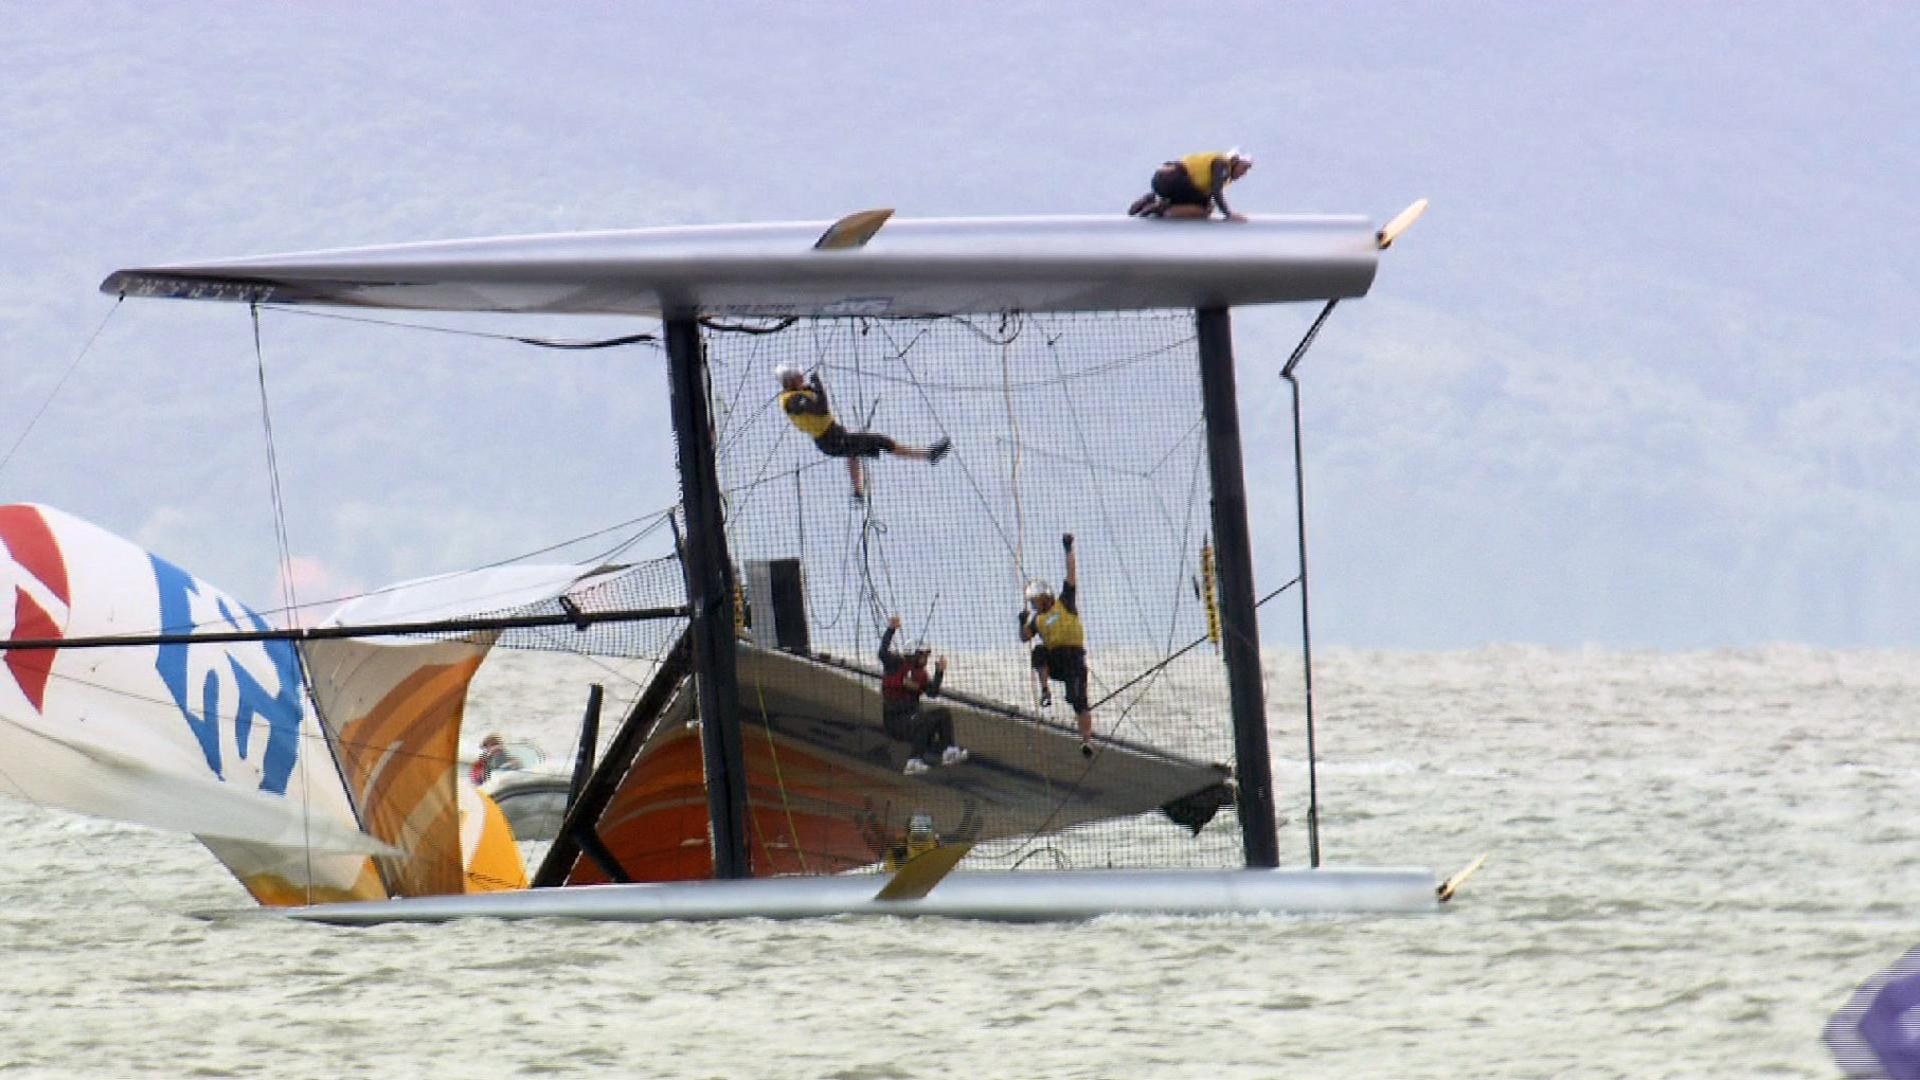 Velejadores do SAP Extreme Sailing Team ficam pendurados após capotagem em Florianópolis (Foto: Vincent Curutchet/Lloyd images)